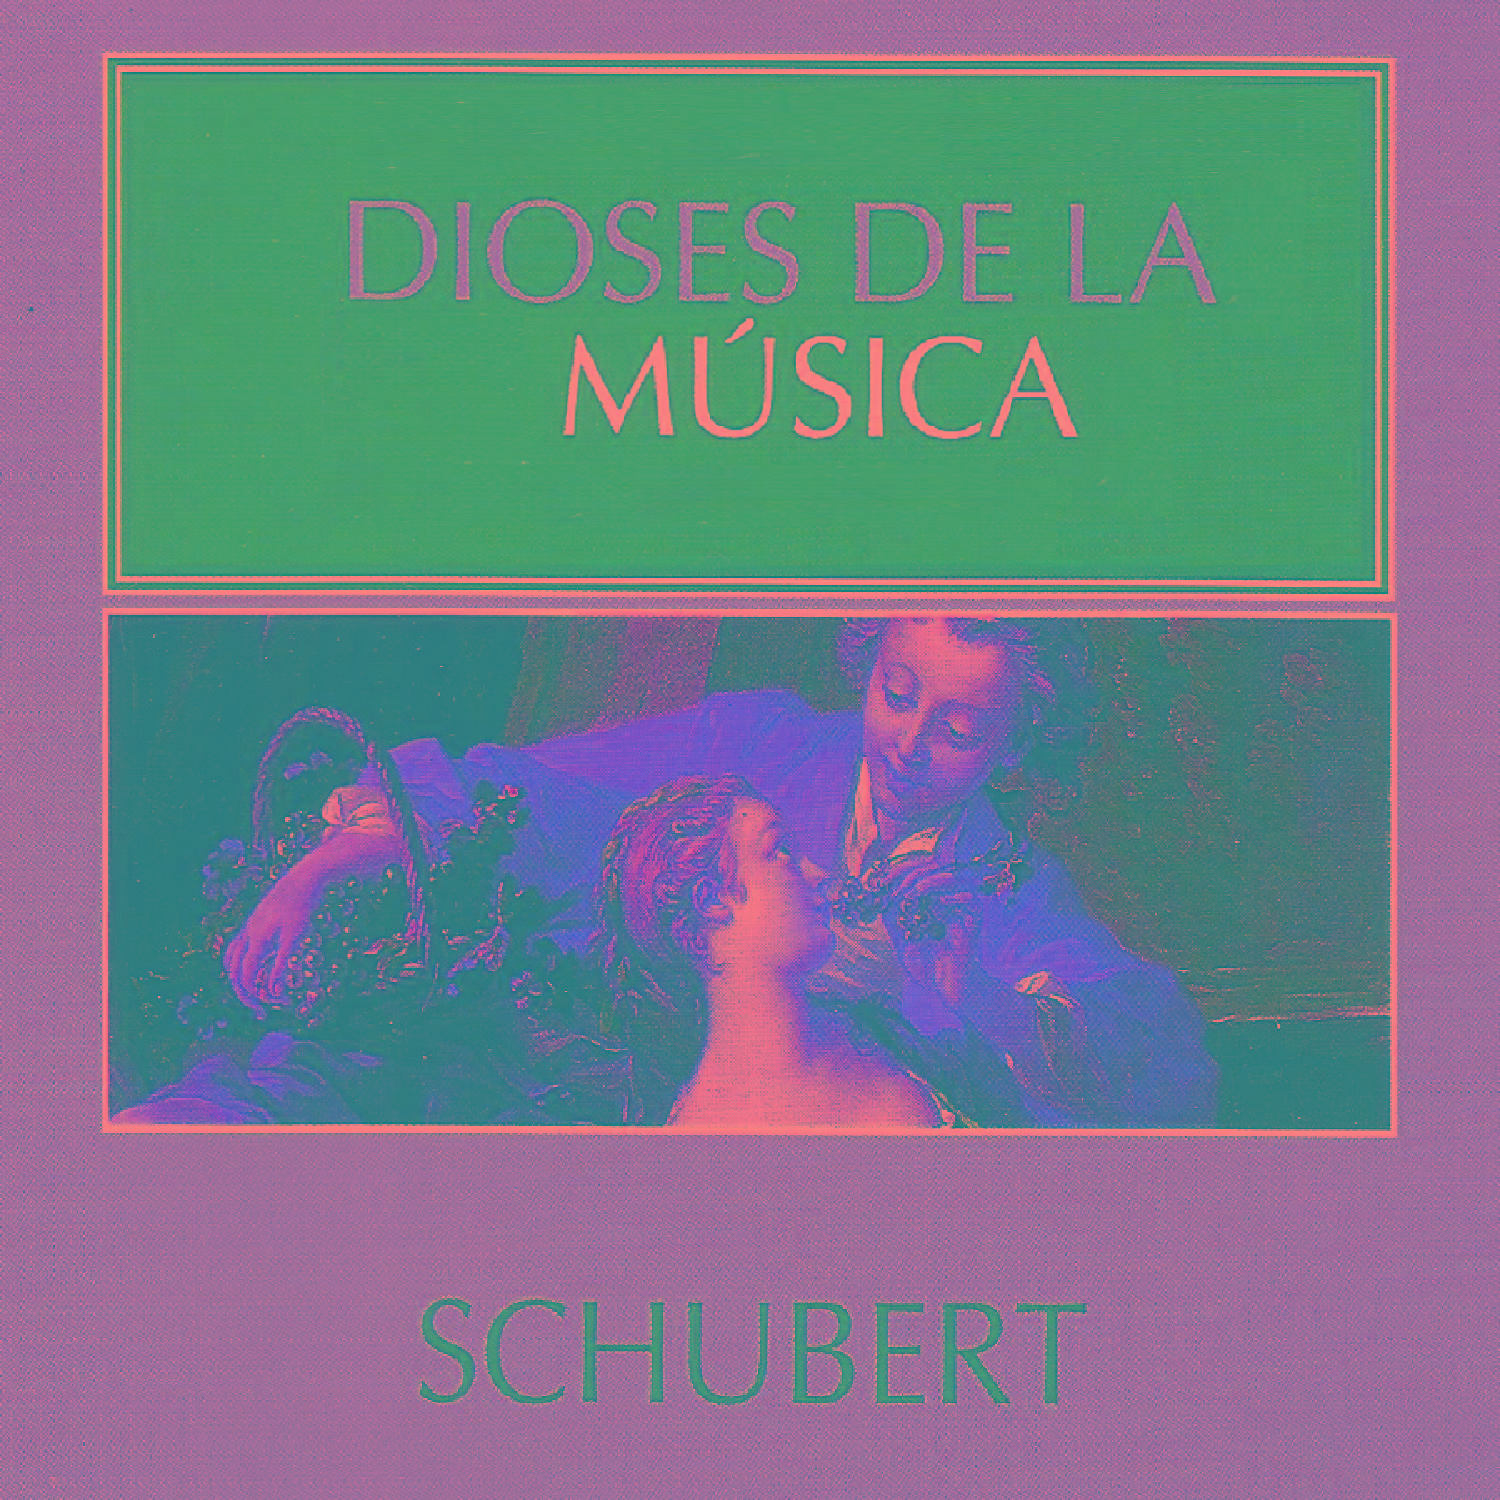 Dioses de la Mu sica  Schubert